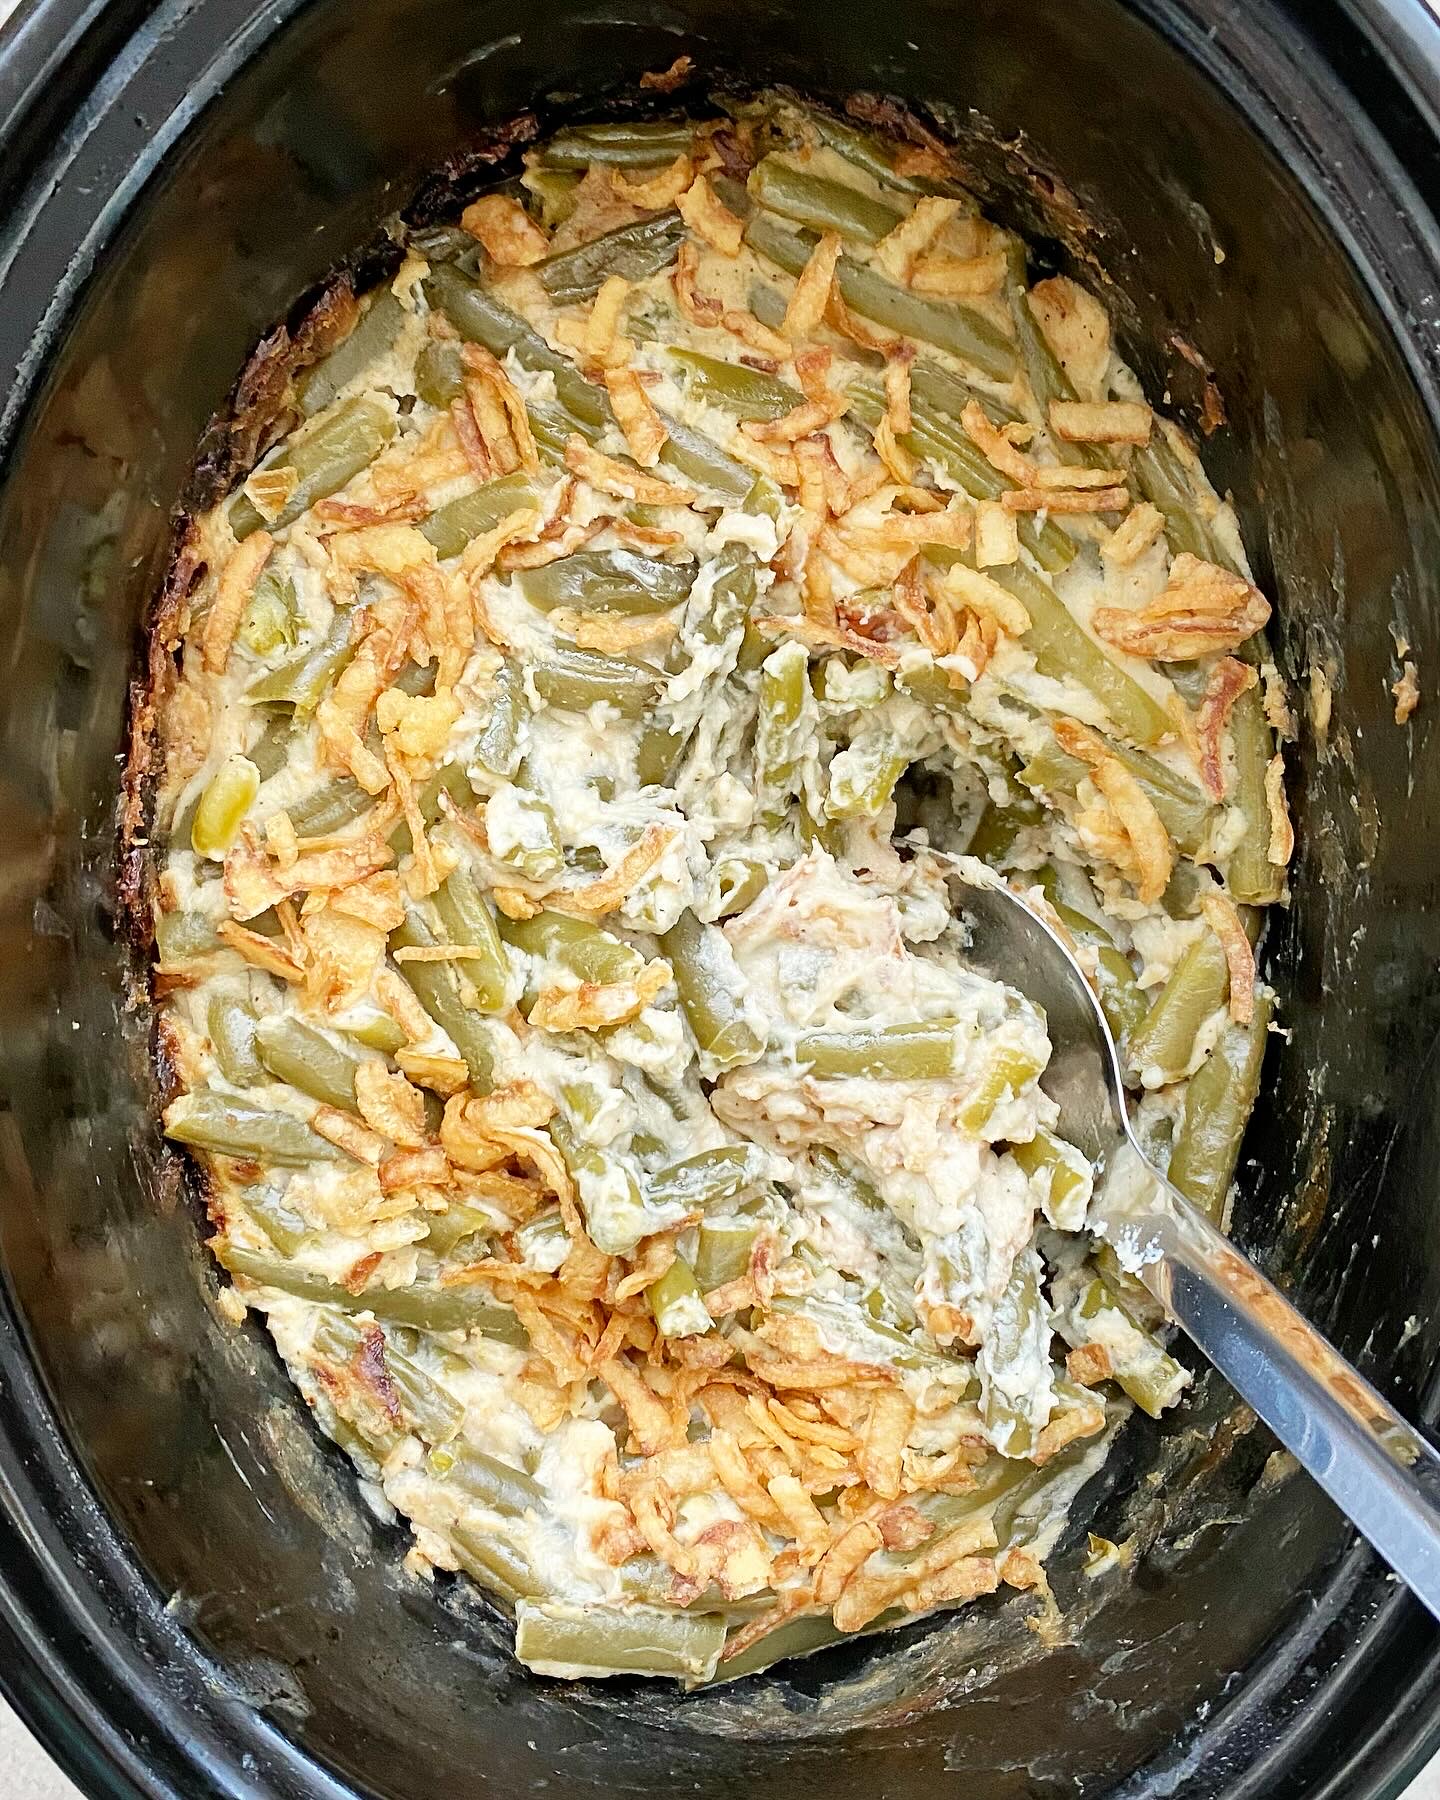 https://fitslowcookerqueen.com/wp-content/uploads/2018/11/healthy-crockpot-green-bean-casserole-6.jpg